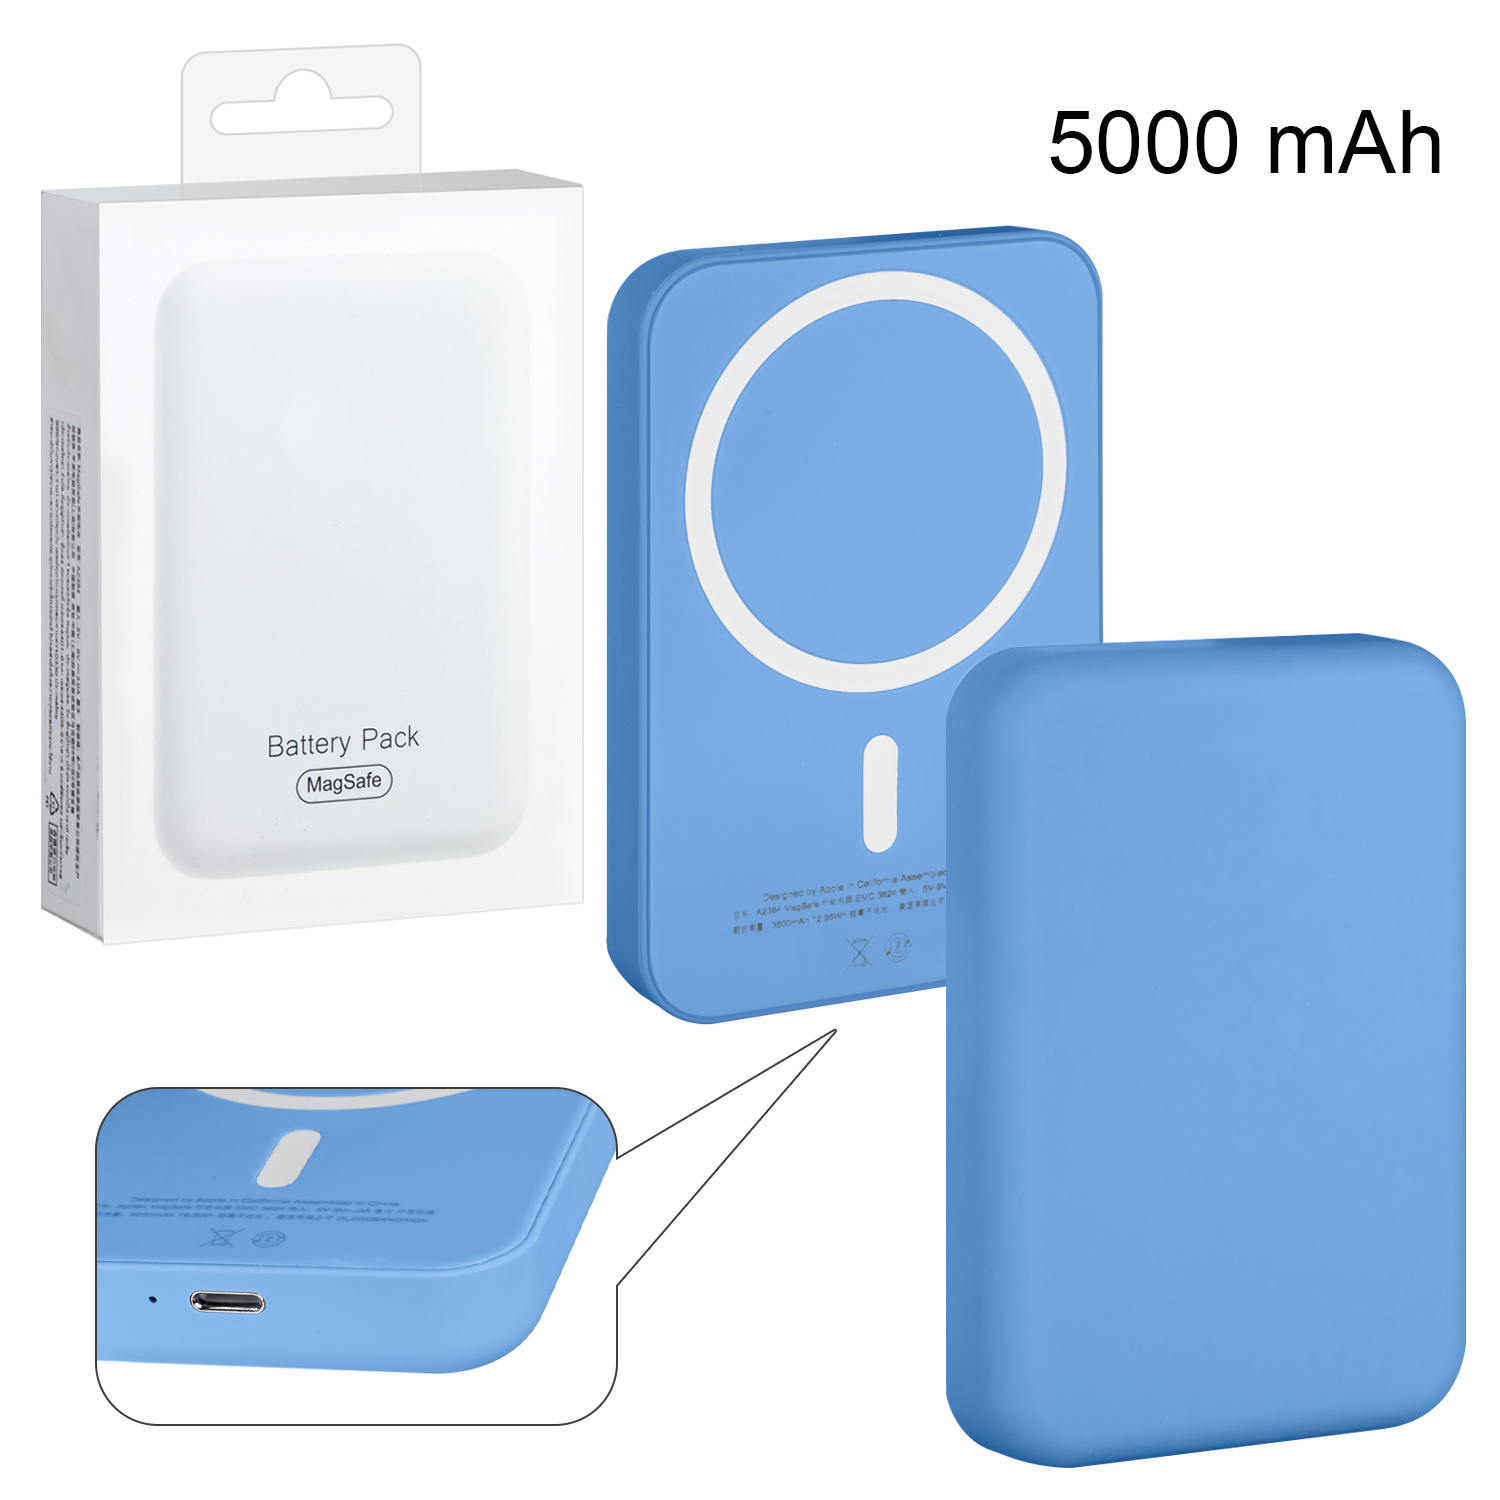 Беспроводное зарядное устройство Magsafe магнитное 5W 5000mAh (no logo) синий